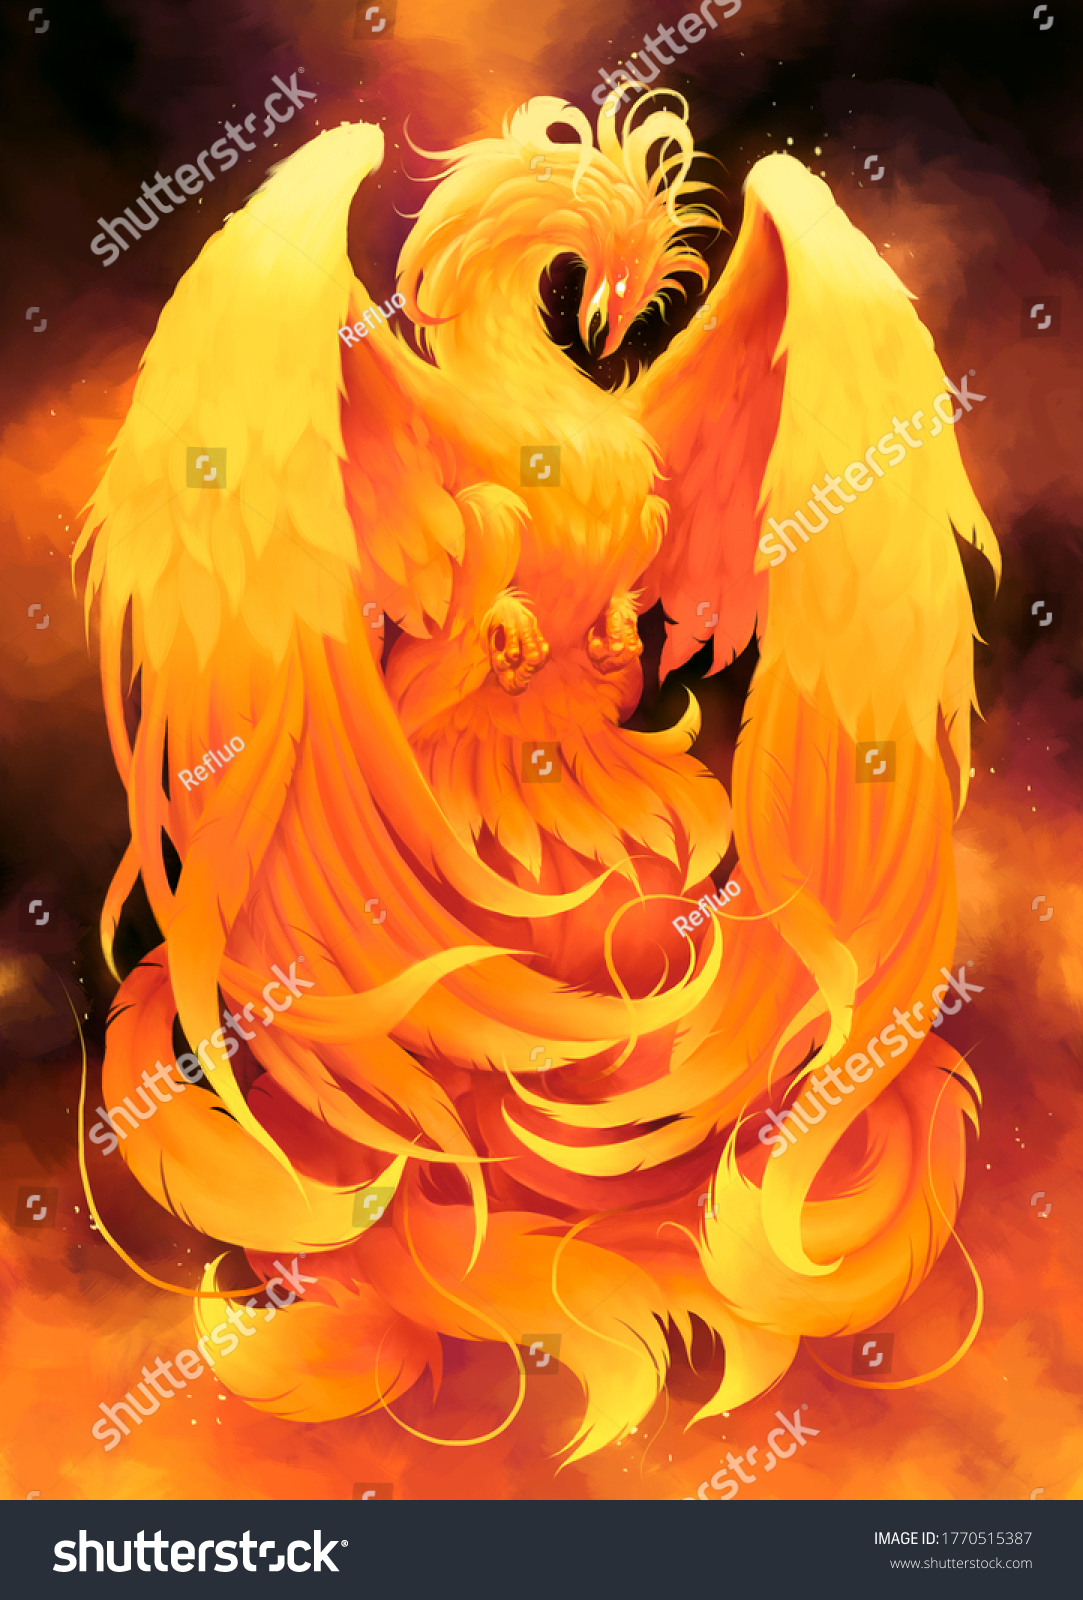 炎の煙の背景に火鳥のフェニックス デジタル画 のイラスト素材